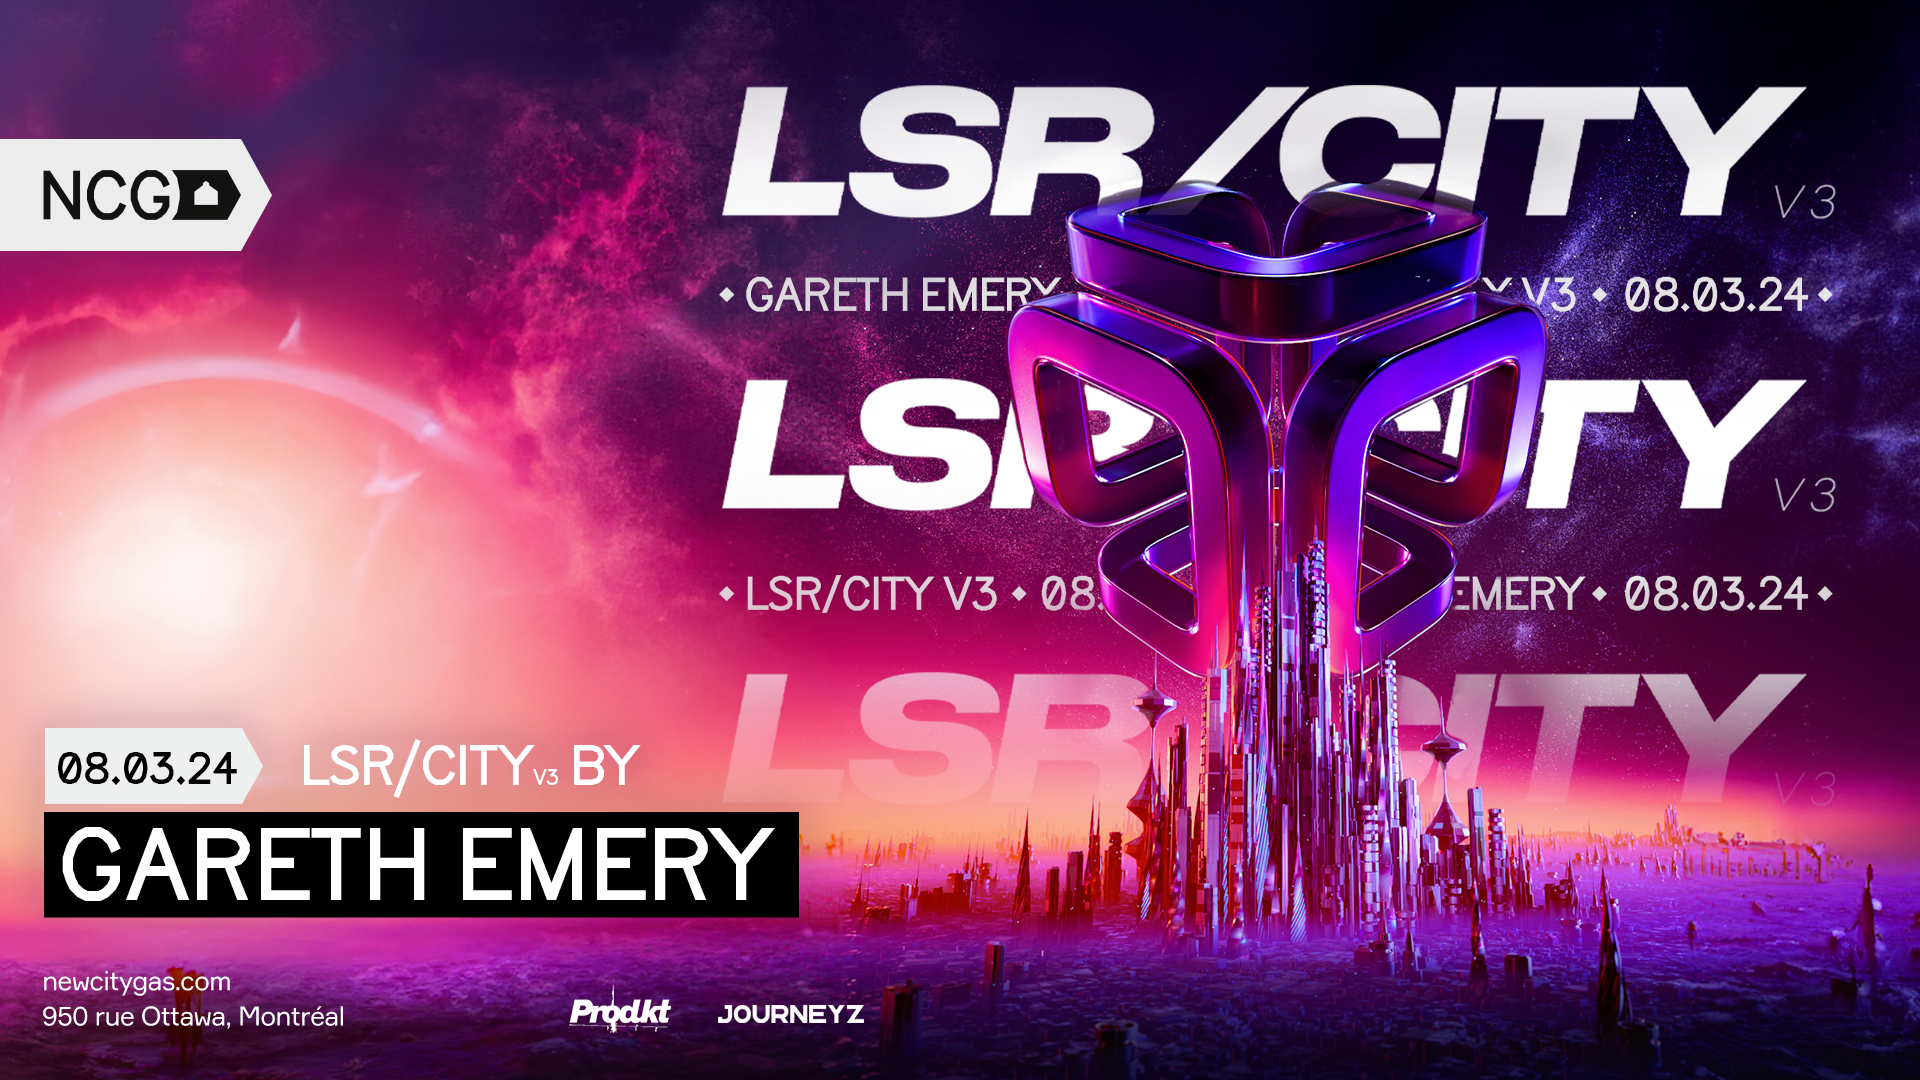 LSR/CITY V3 by Gareth Emery - フライヤー表